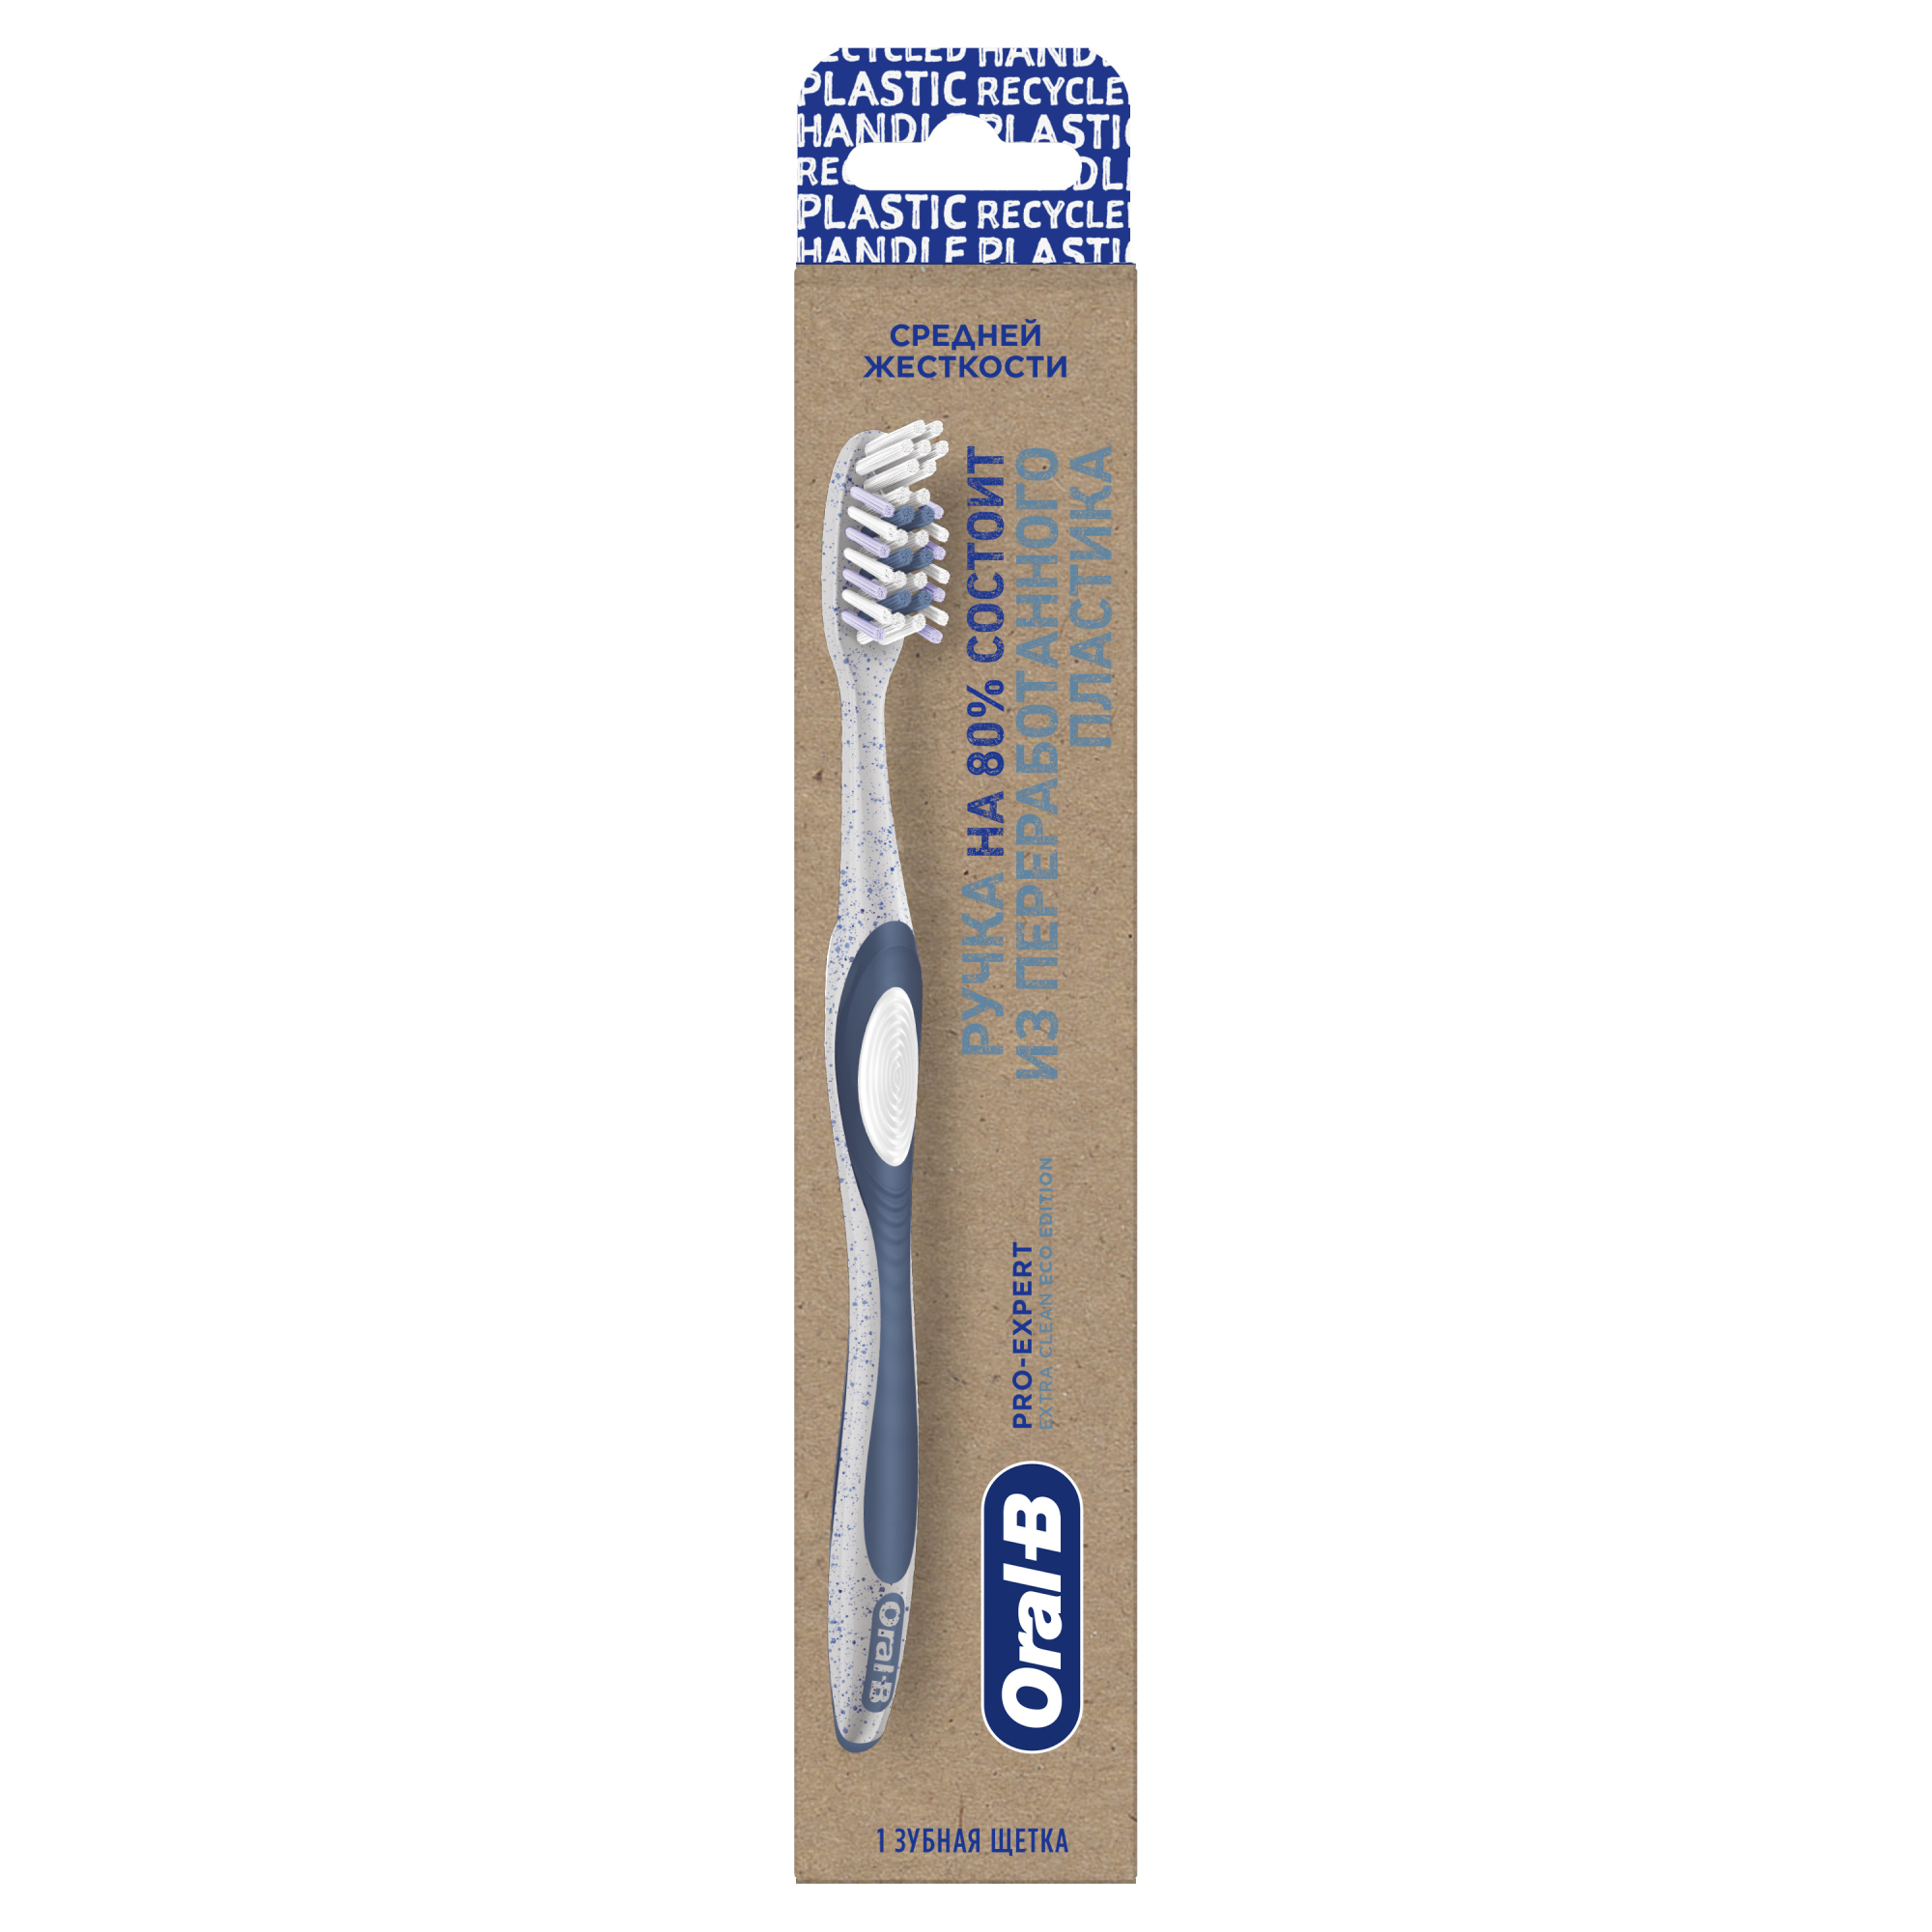 Зубная щетка Oral-B Pro-Expert Eco Edition из переработанного пластика для эффективного очищения, средней жесткости, 1 шт щетка пуходерка средняя жесткая с каплями основание 59 х 49 мм розовая